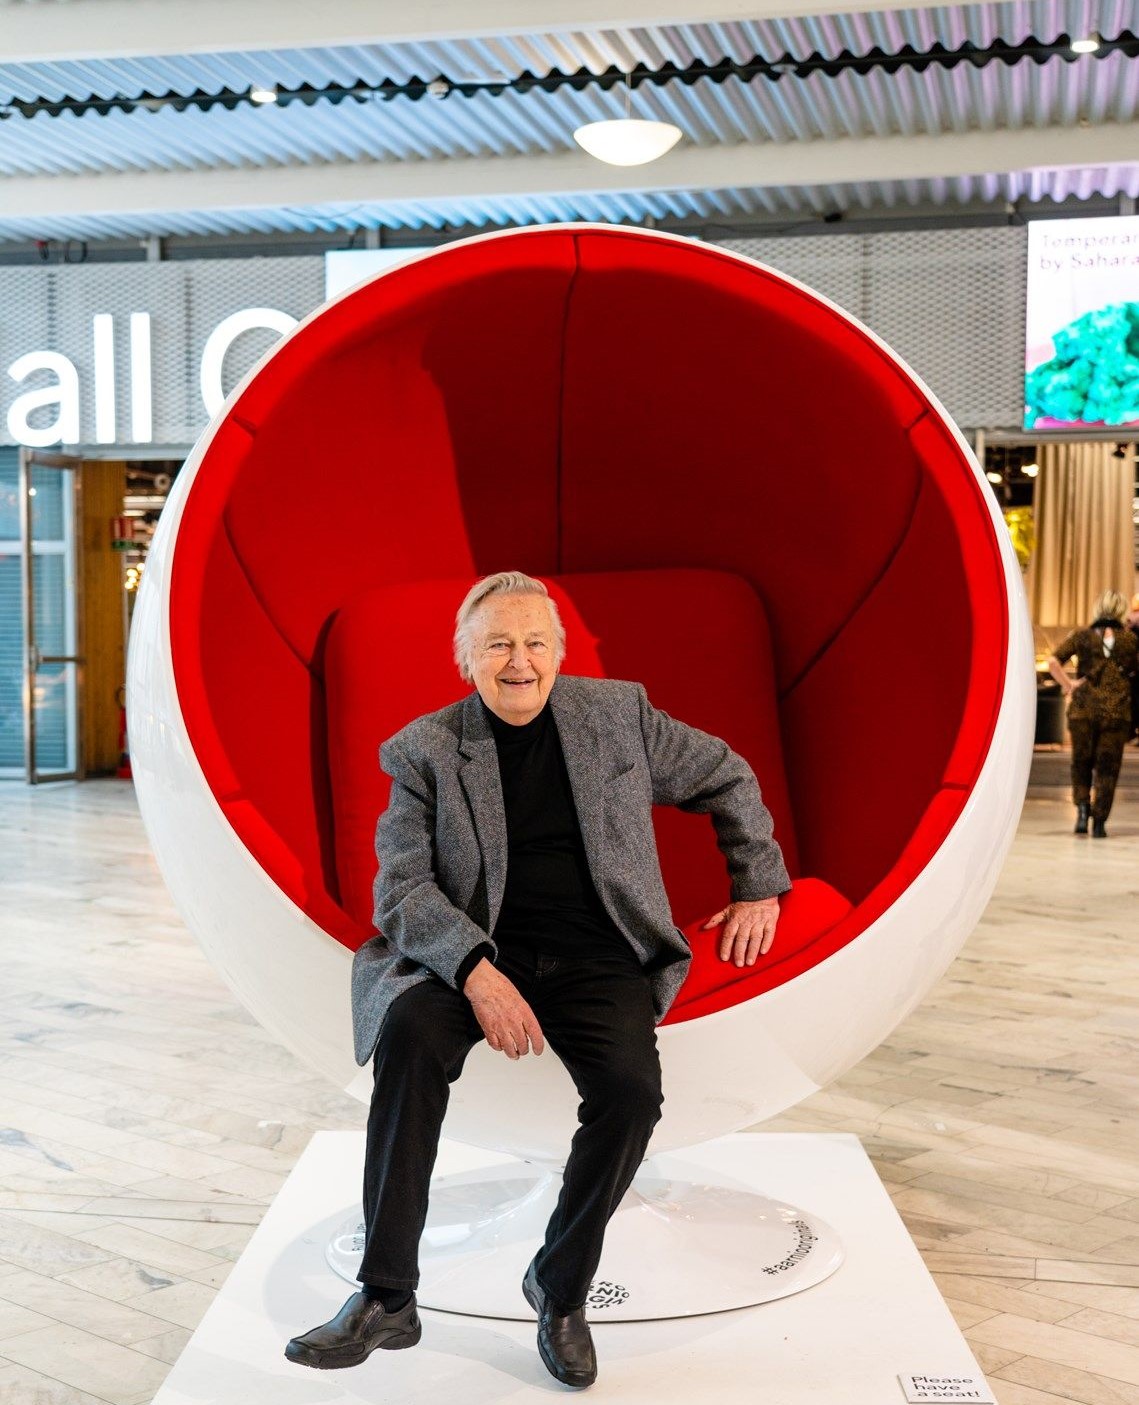 Eero Aarnio assis dans sa Chaise Ball rouge et blanche. Il est habillé en noir avec une veste de costume grise. Cette chaise est en exposition dans un hall.